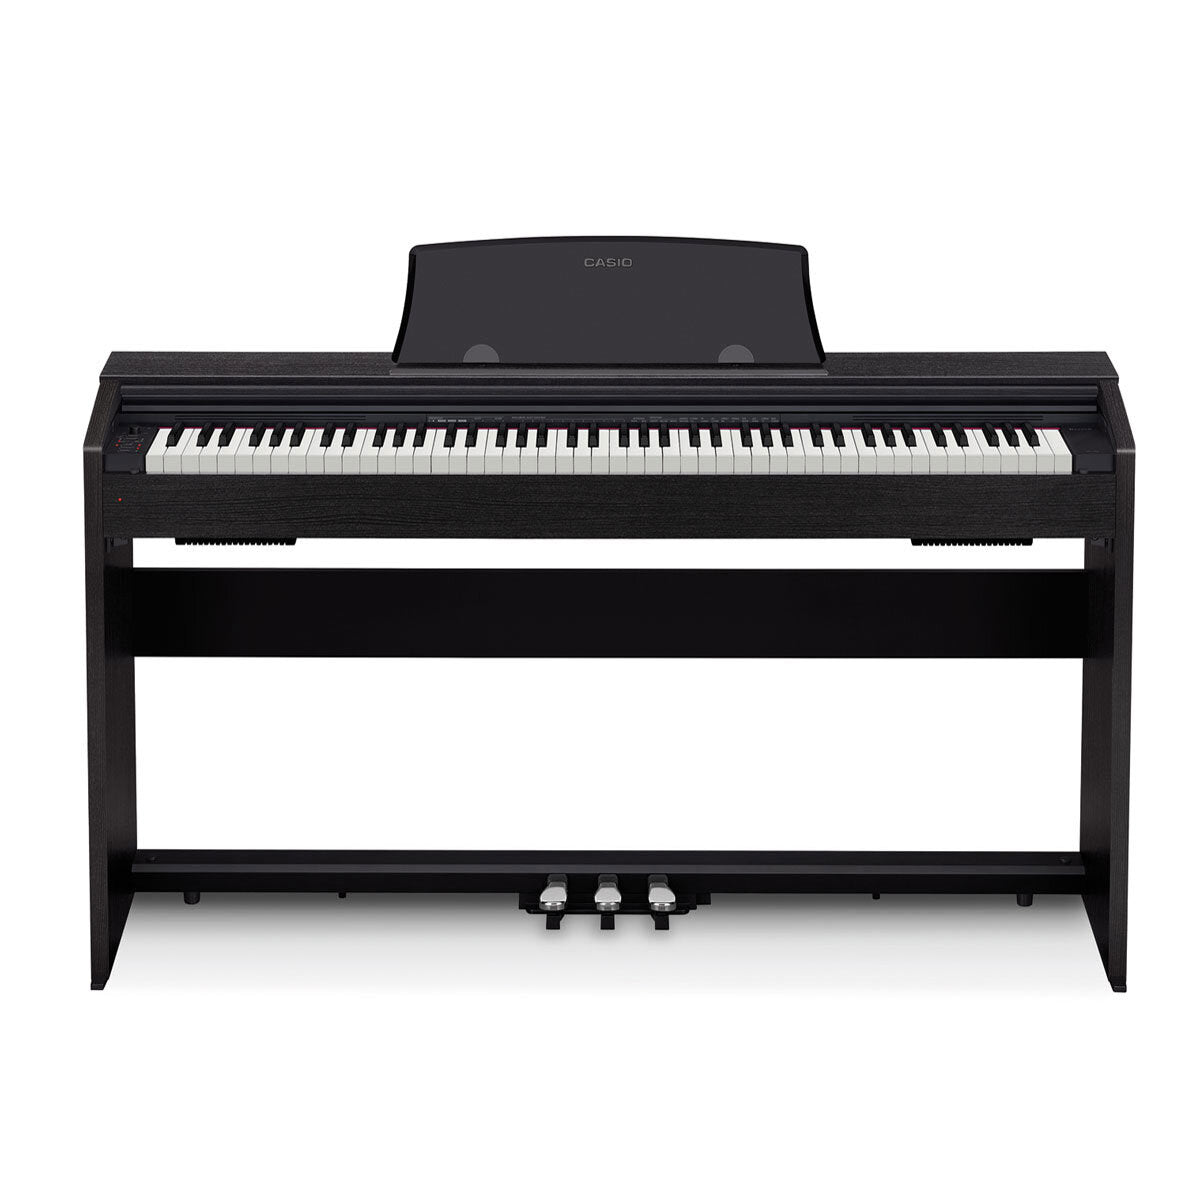 Casio Privia PX-765 Digital Piano in Black